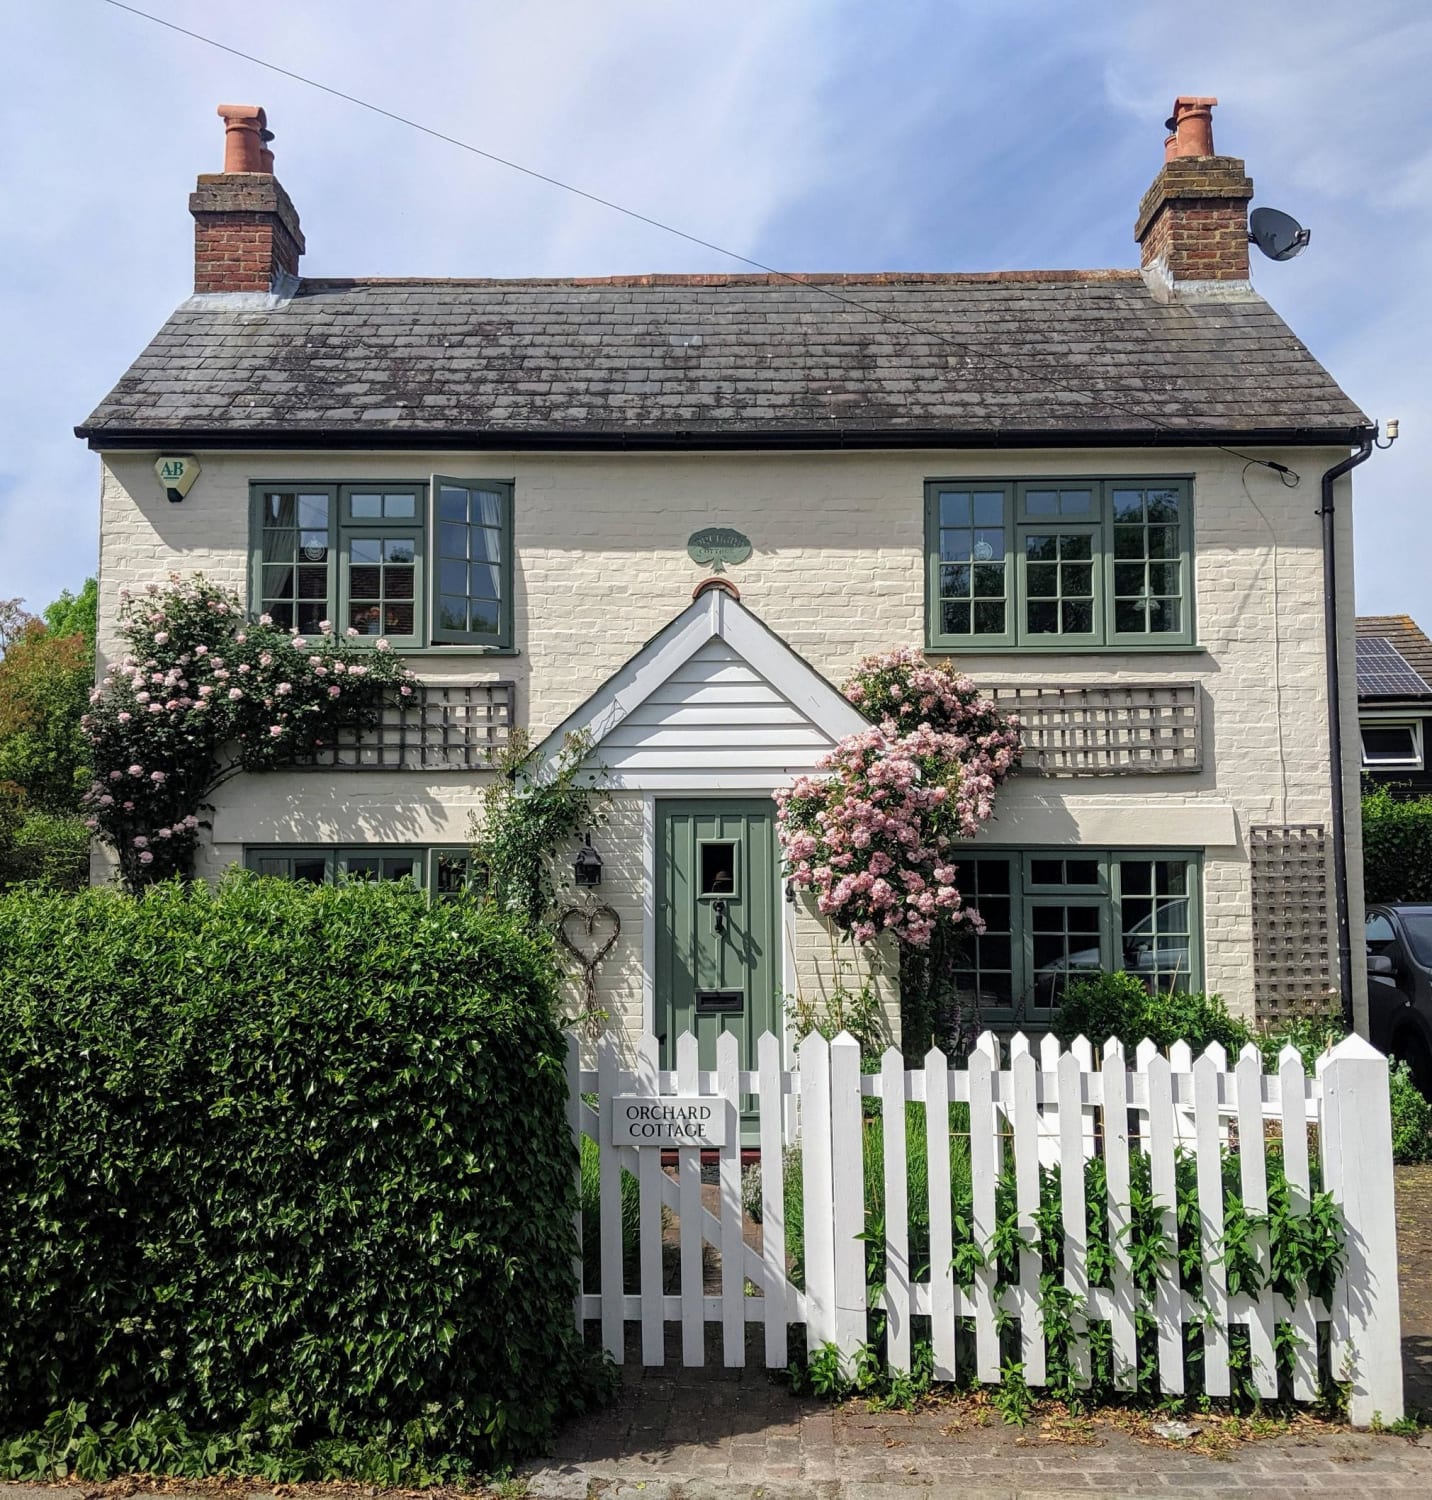 Orchard Cottage, Shoreham, Kent, UK